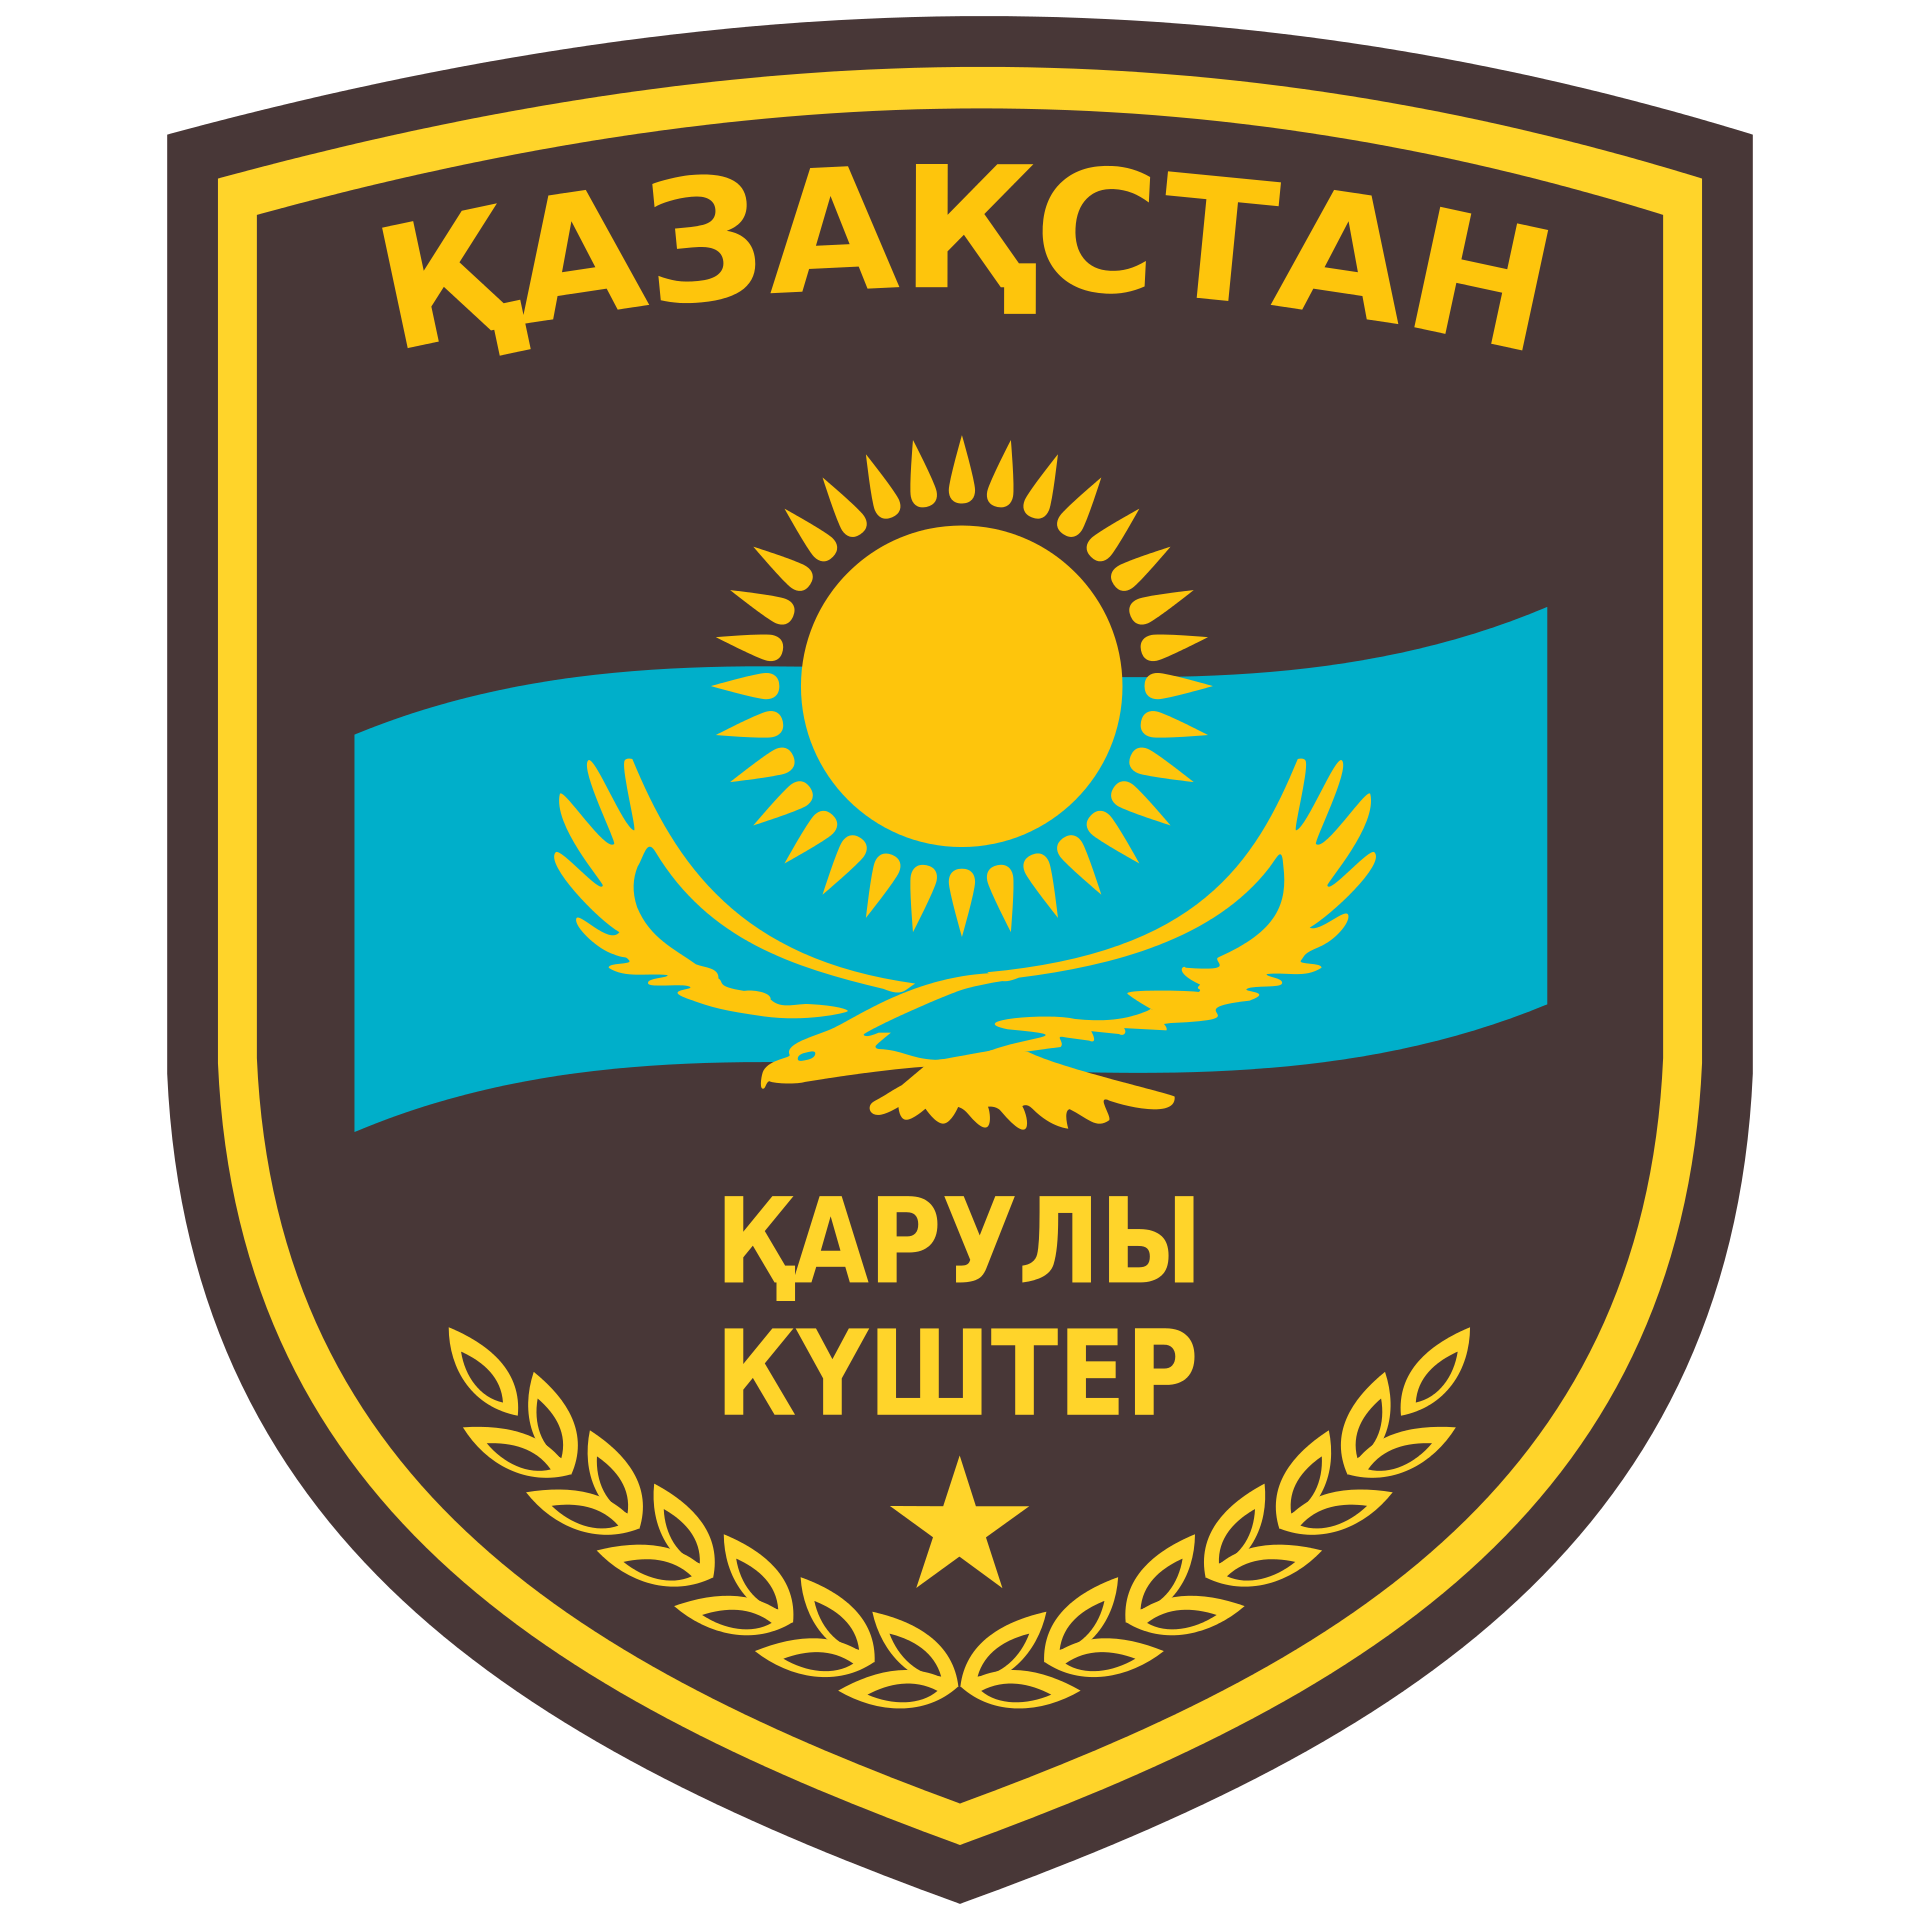 军徽曾经有不少关于哈萨克斯坦的笑话,有些人对于这个中亚内陆国家的